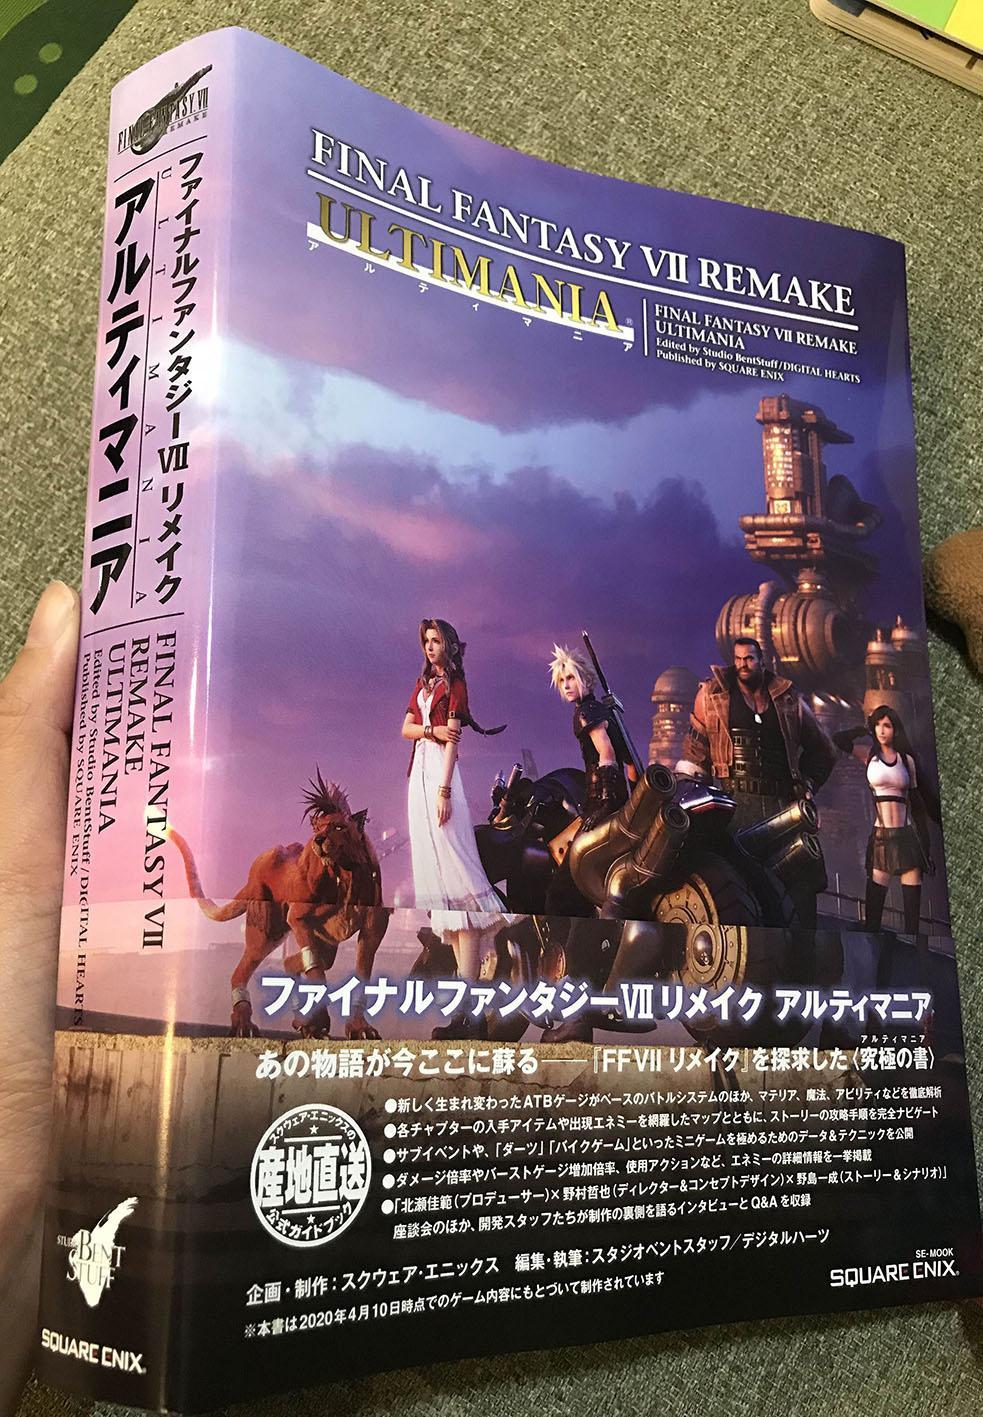 其他 Final Fantasy Vii Ultimania 重製版攻略本開箱 Ff 最終幻想系列 太空戰士 哈啦板 巴哈姆特